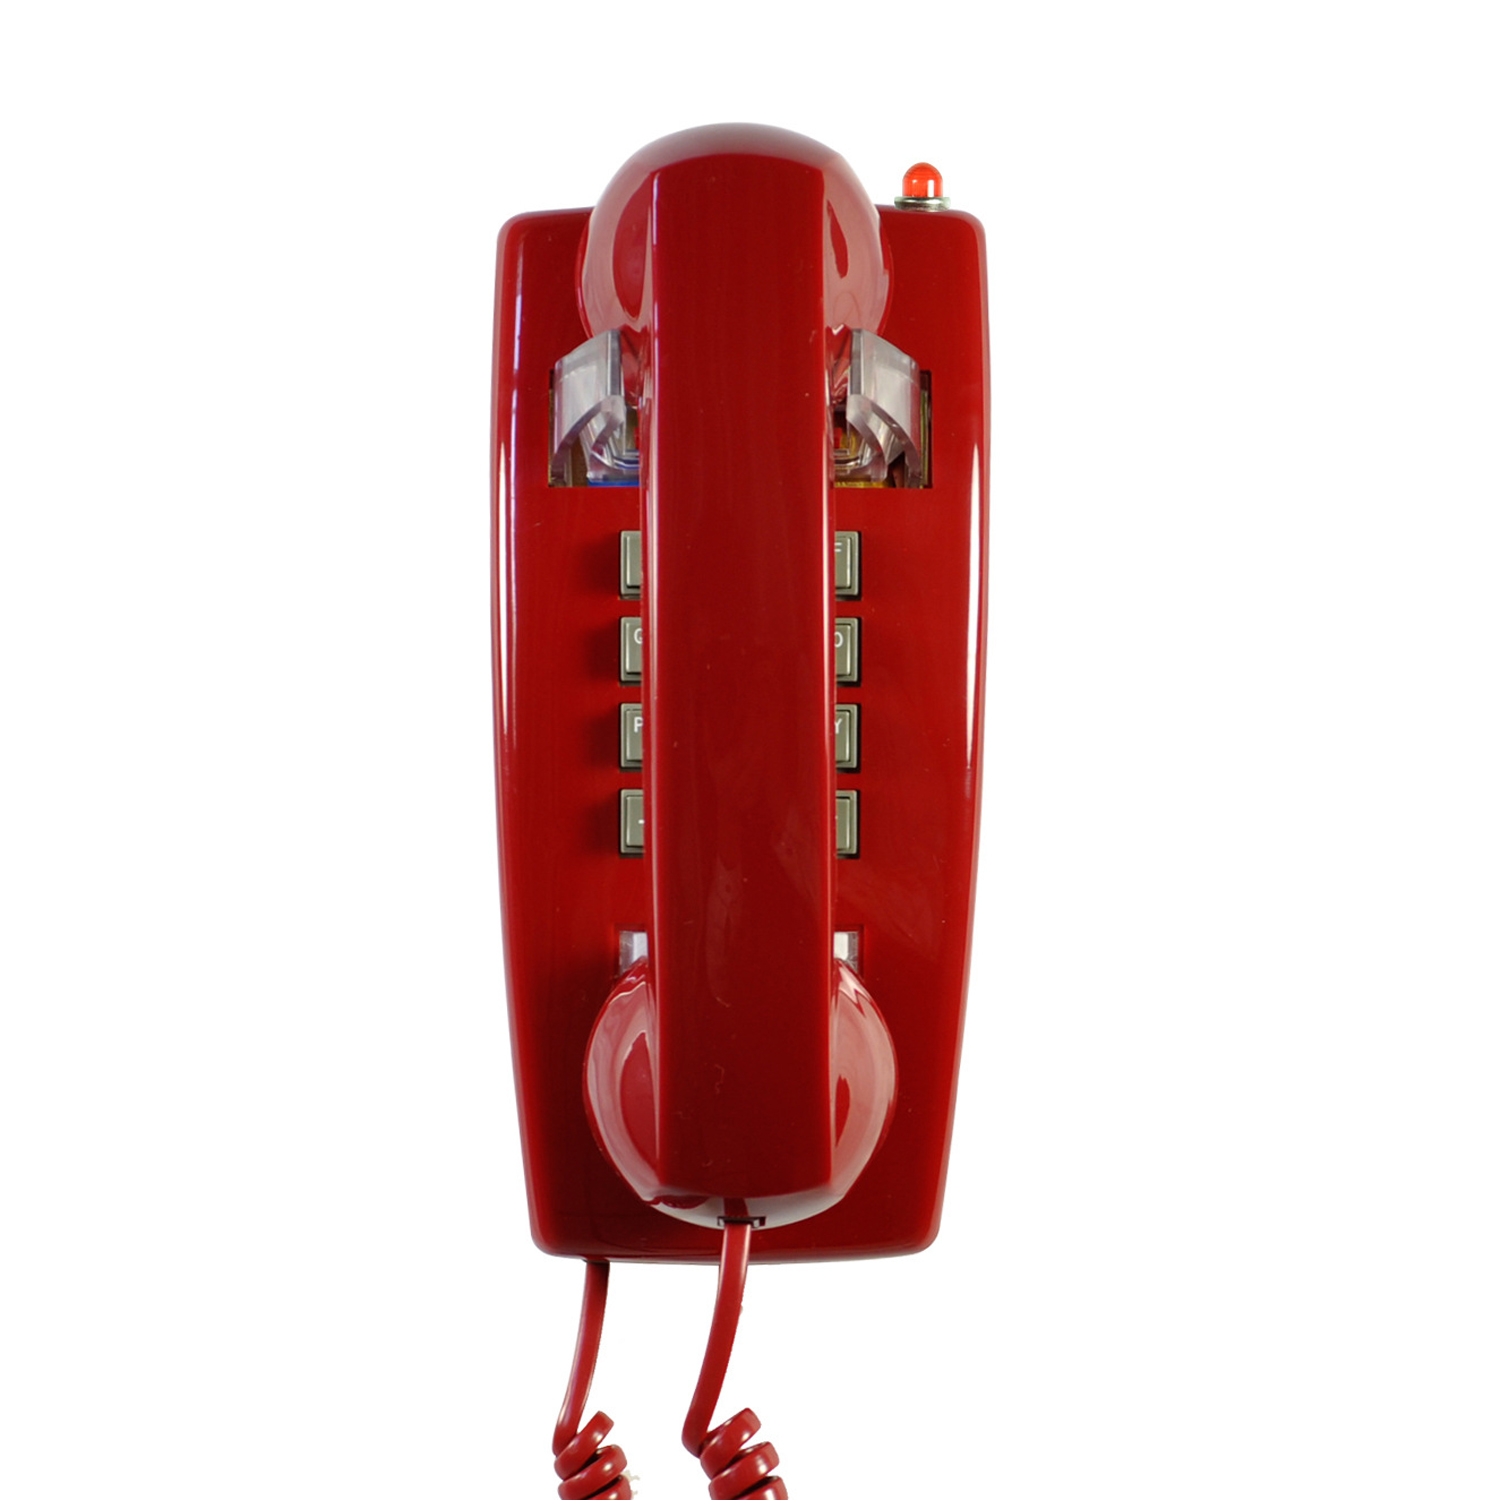 Snoer Muur Telefoon, Analoge Wall Mount Telefoon Met Koord, Vintage Wandmontage Telefoons Vaste Met Luid Traditionele Ringer: red phone